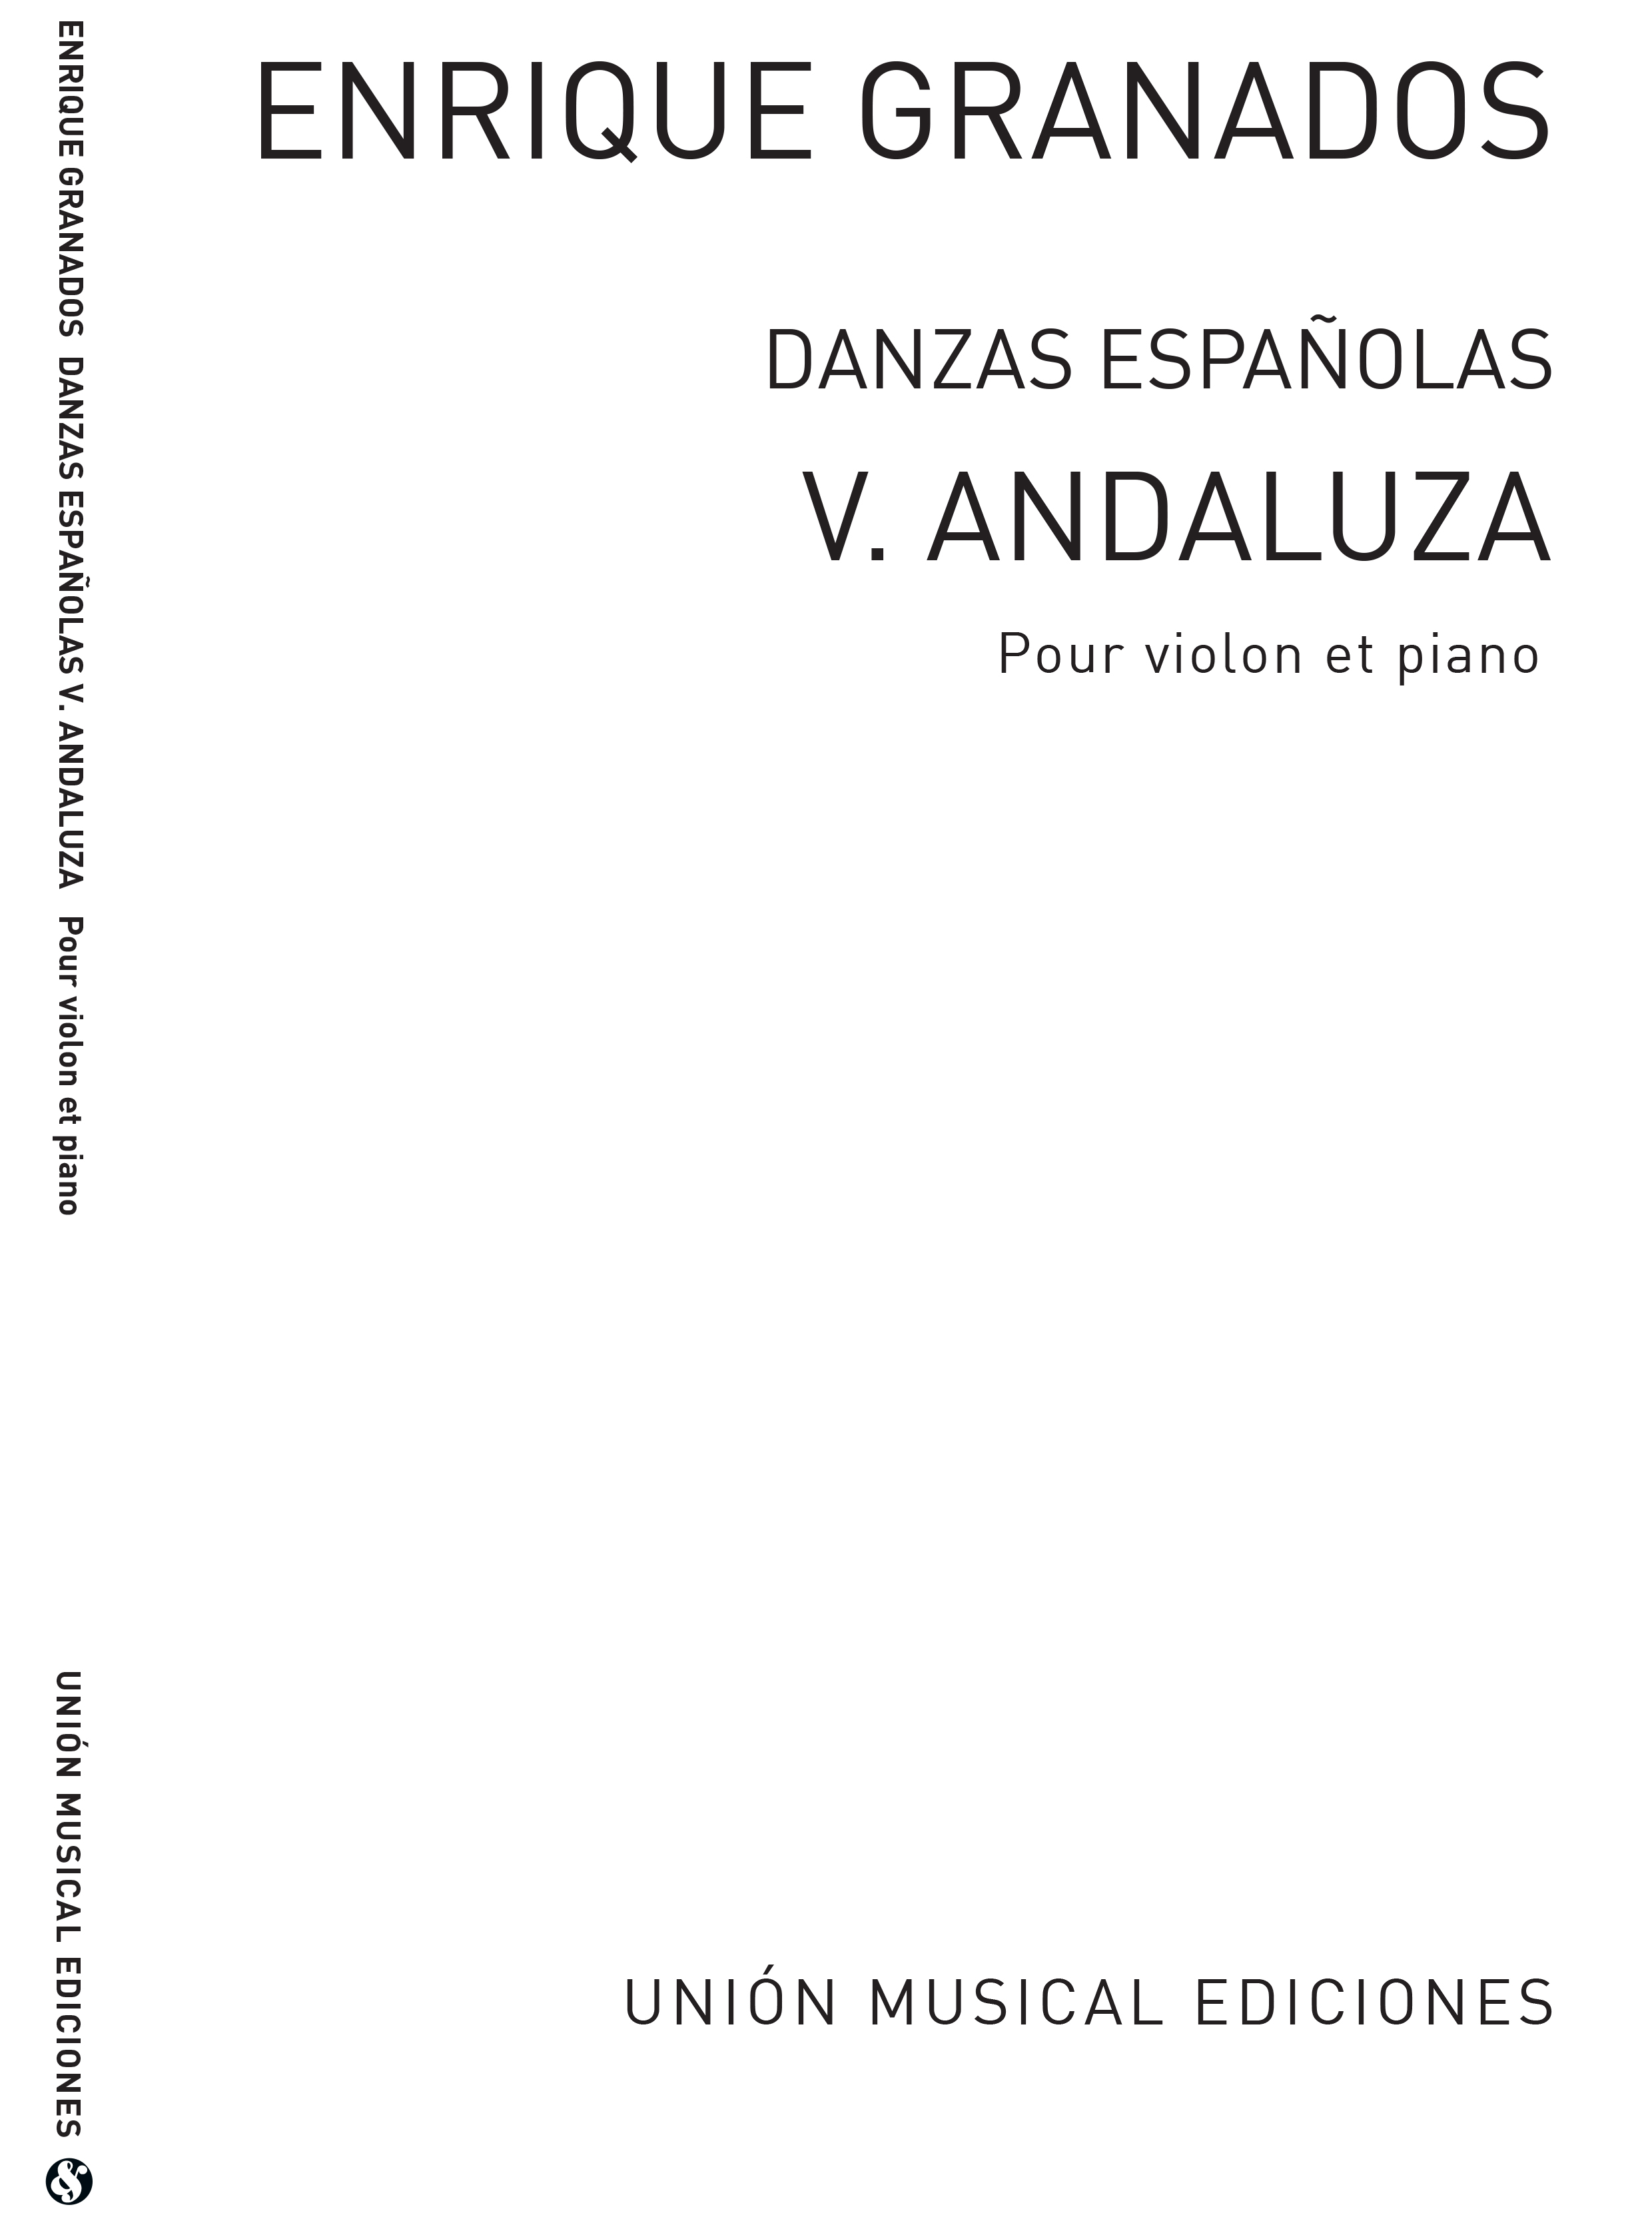 Enrique Granados: Danza Espanola No.5 Andaluza: Violin: Instrumental Work